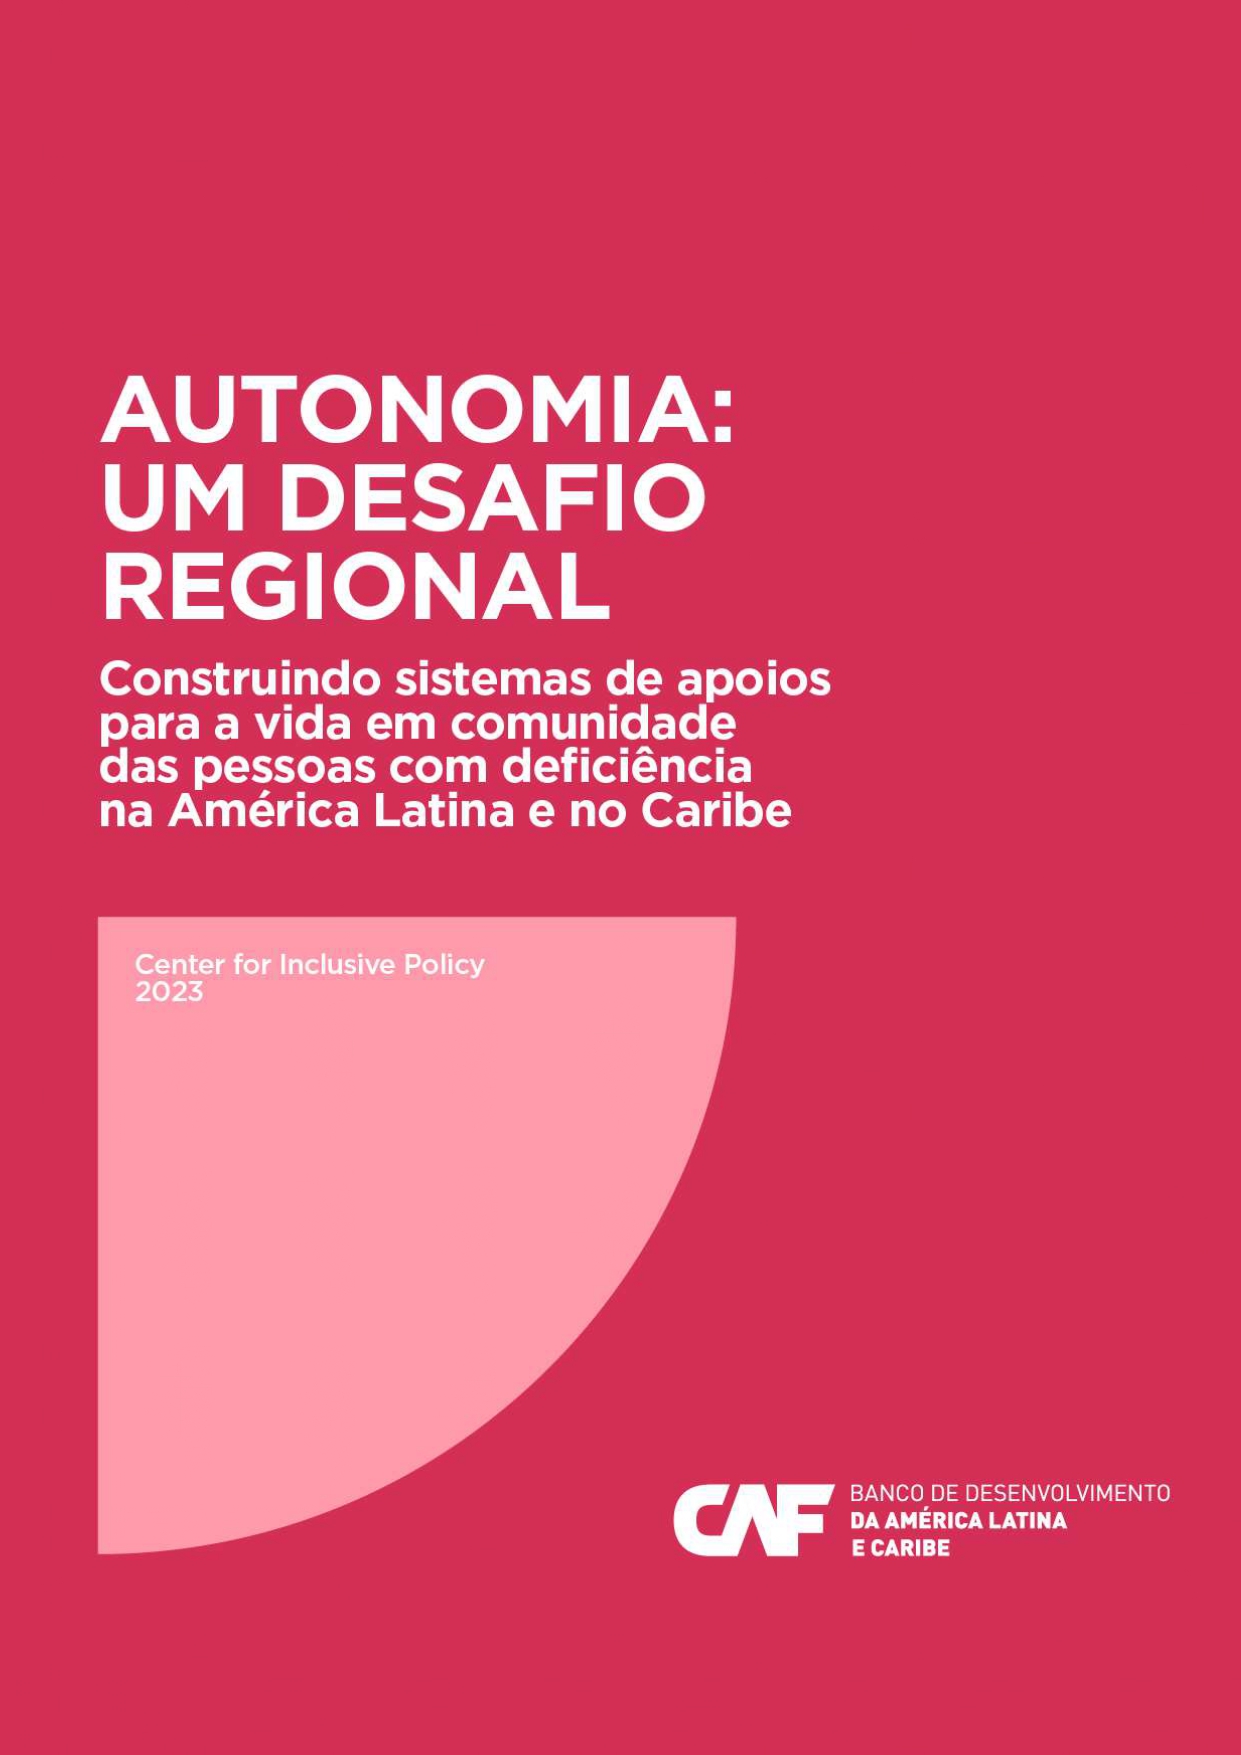 Autonomia: um desafio regional - Construindo sistemas de apoios para a vida em comunidade das pessoas com deficiência na América Latina e no Caribe